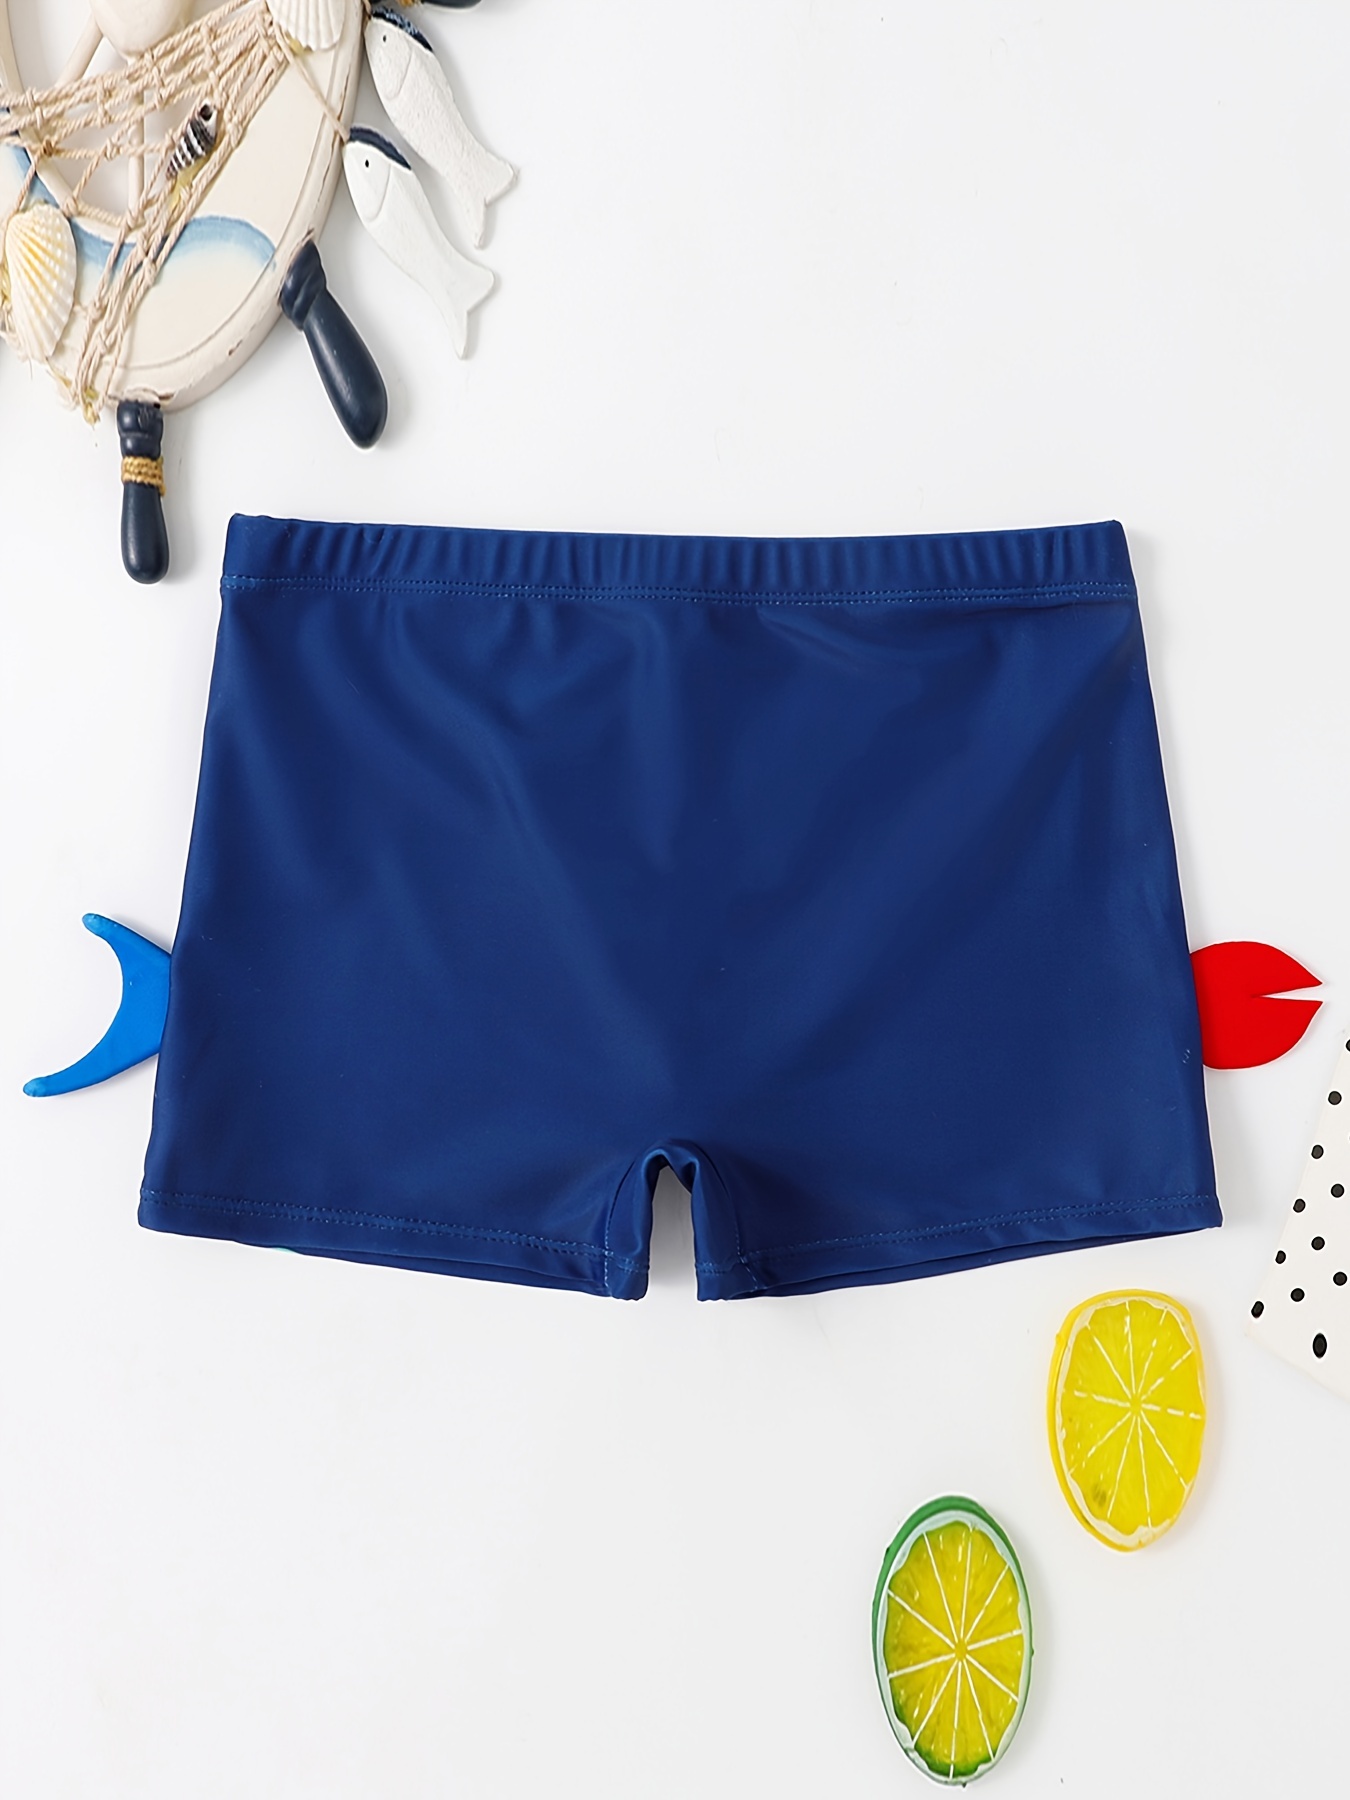 Kids UV Fishing Shorts - Grab Ya Crab - Design Works Apparel – Design Works  Apparel - Create Your Vibe Outdoors